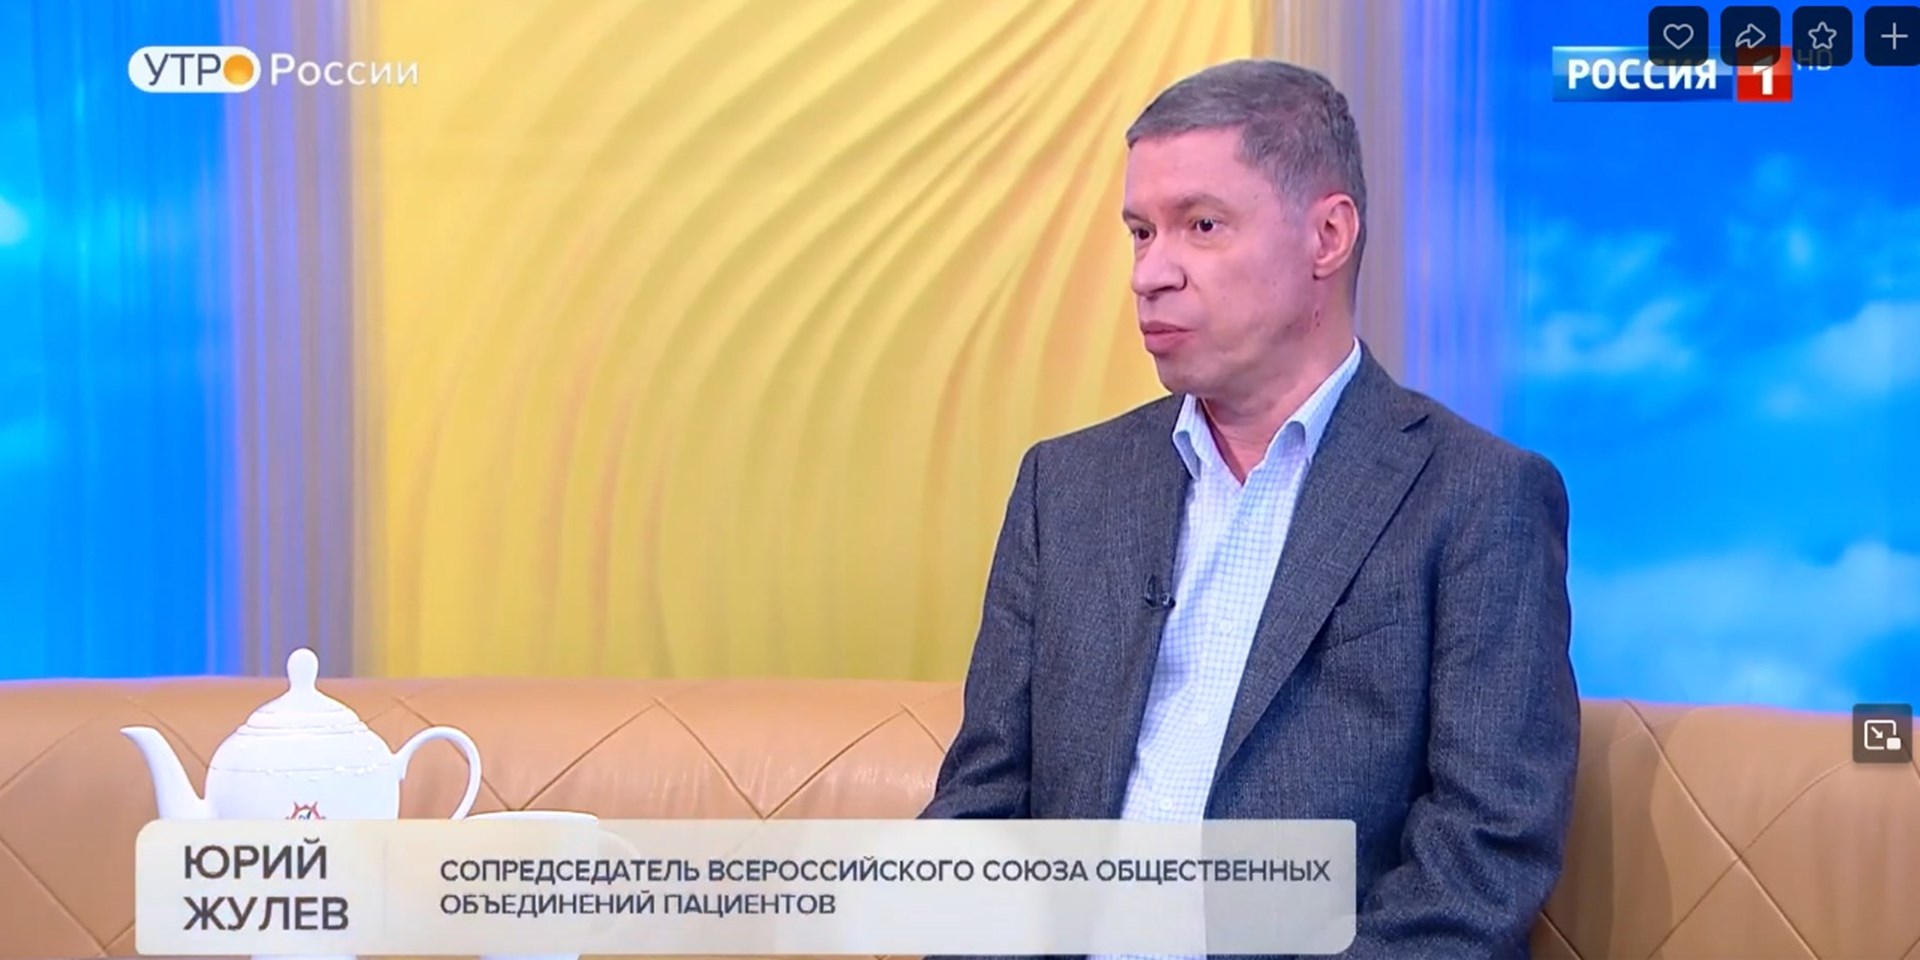 Юрий Жулёв в программе «Утро России» высказал позицию ВСП по теме ответственного самолечения